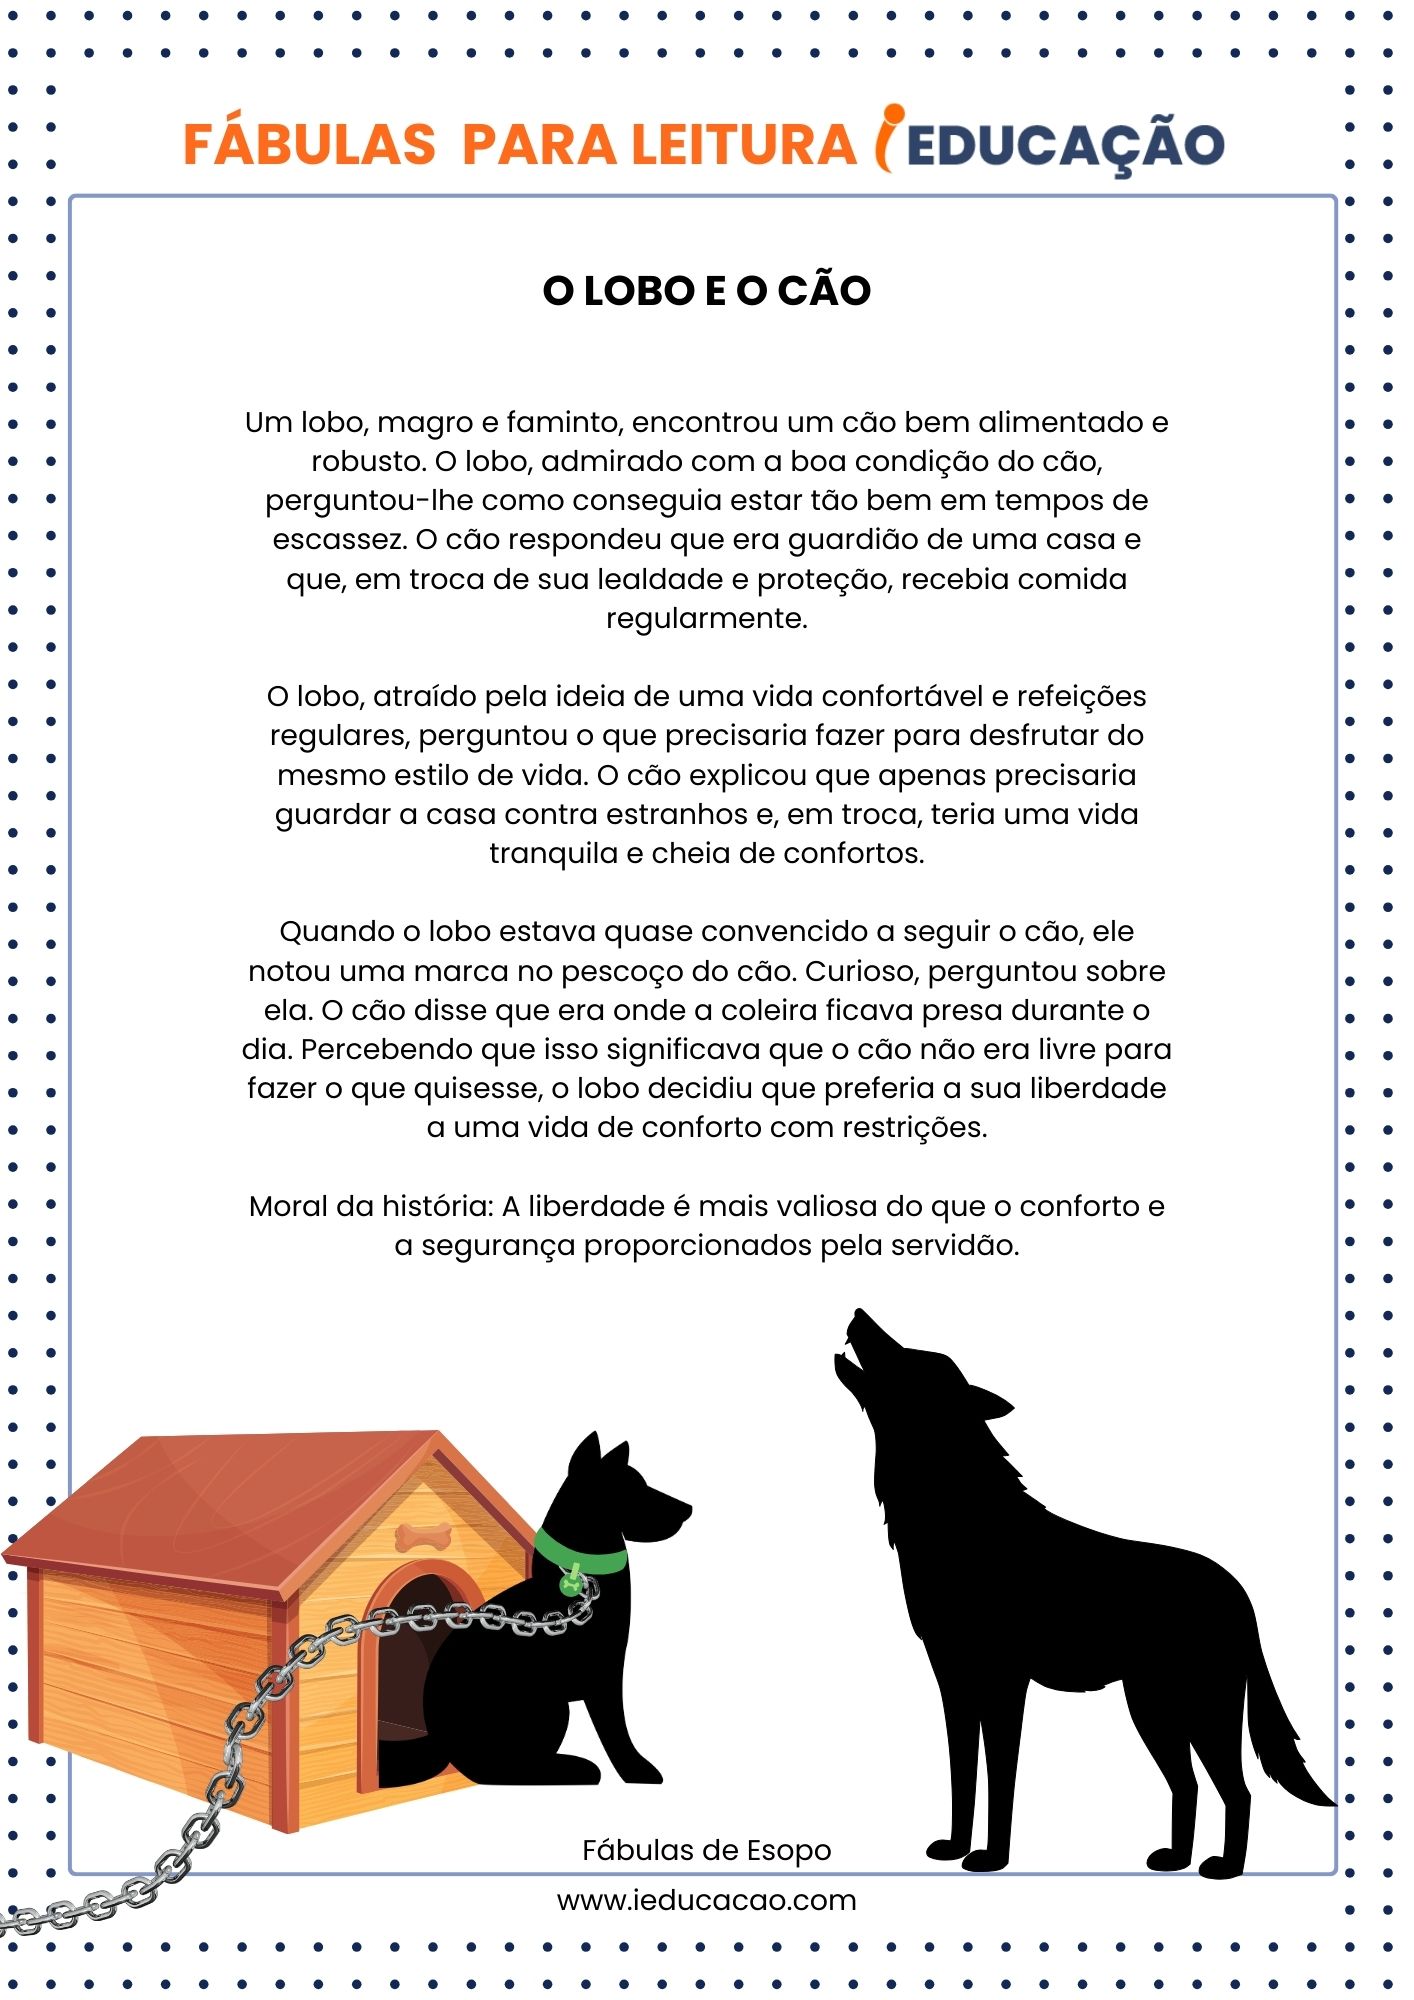 Fábula_ O Lobo e o Cão - Fábulas de Esopo - Fábulas para Leitura.jpg